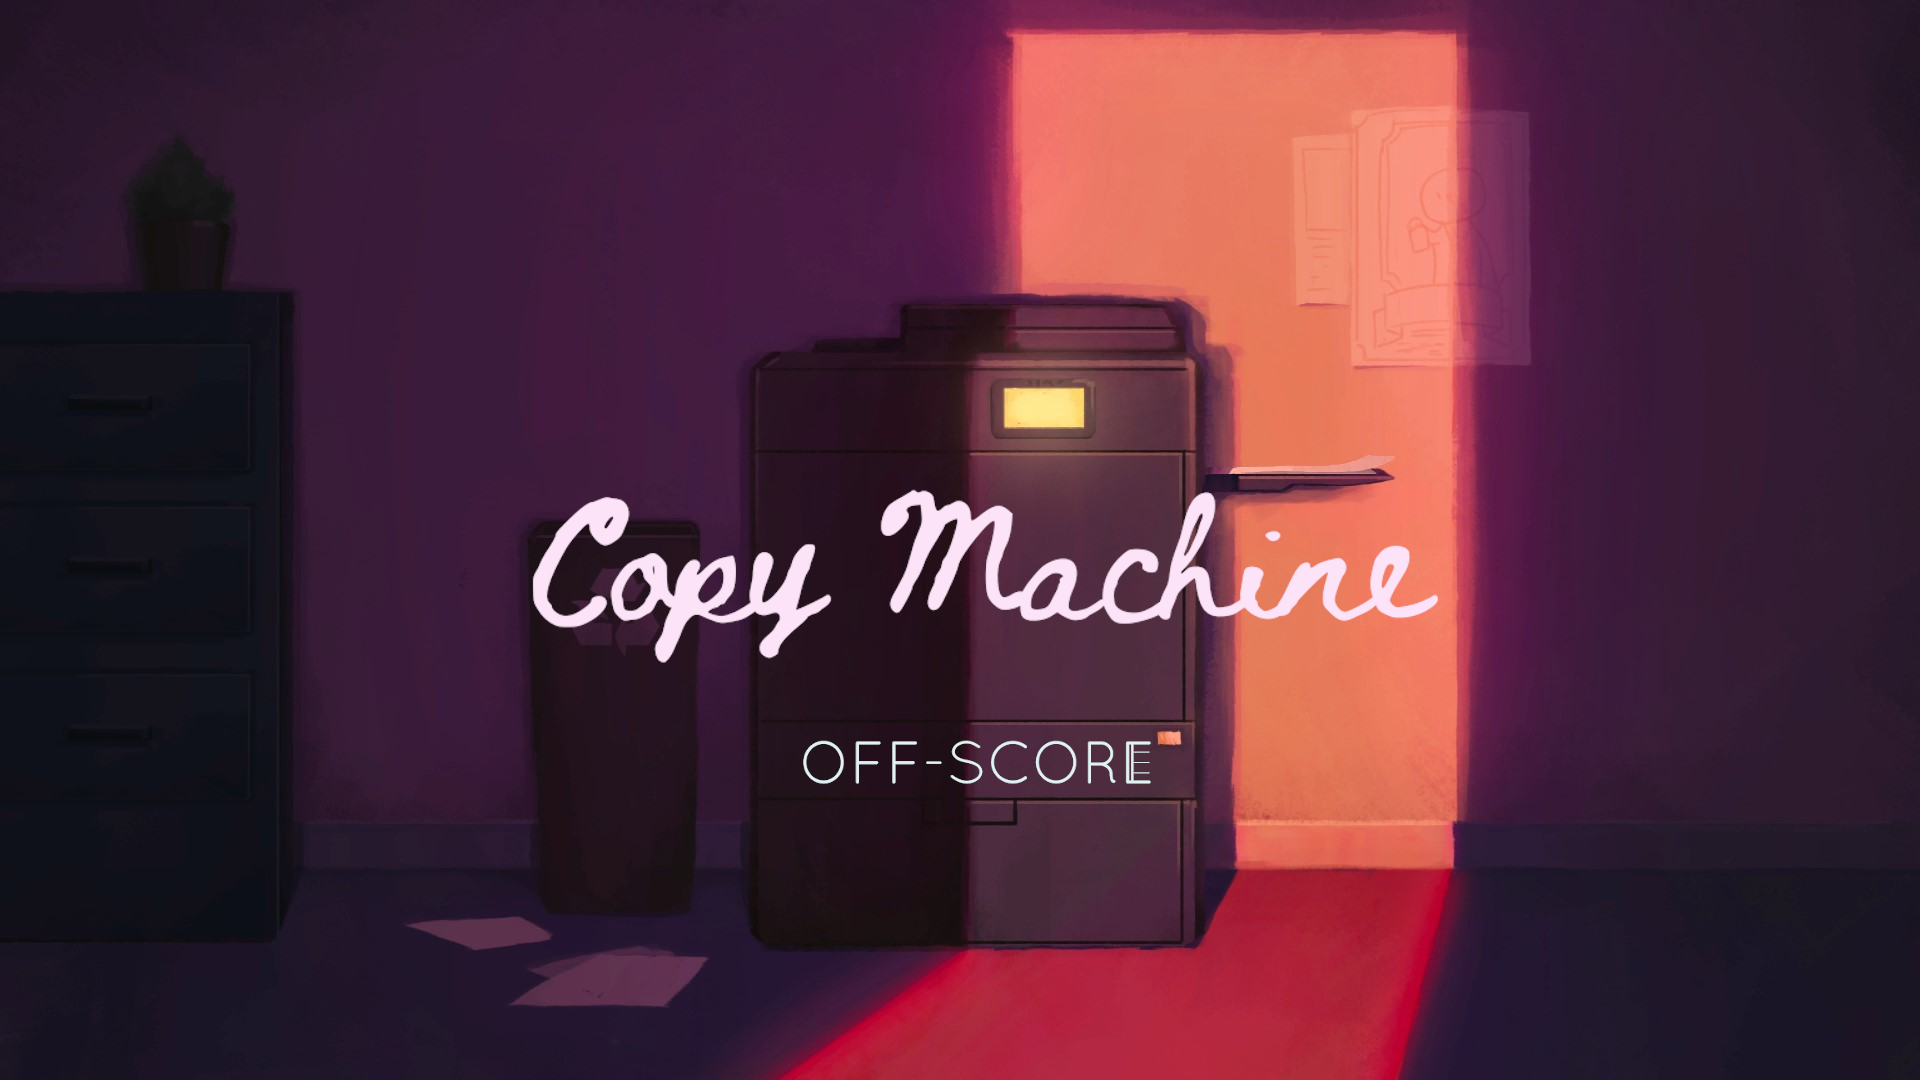 Off-Score: Copy machine